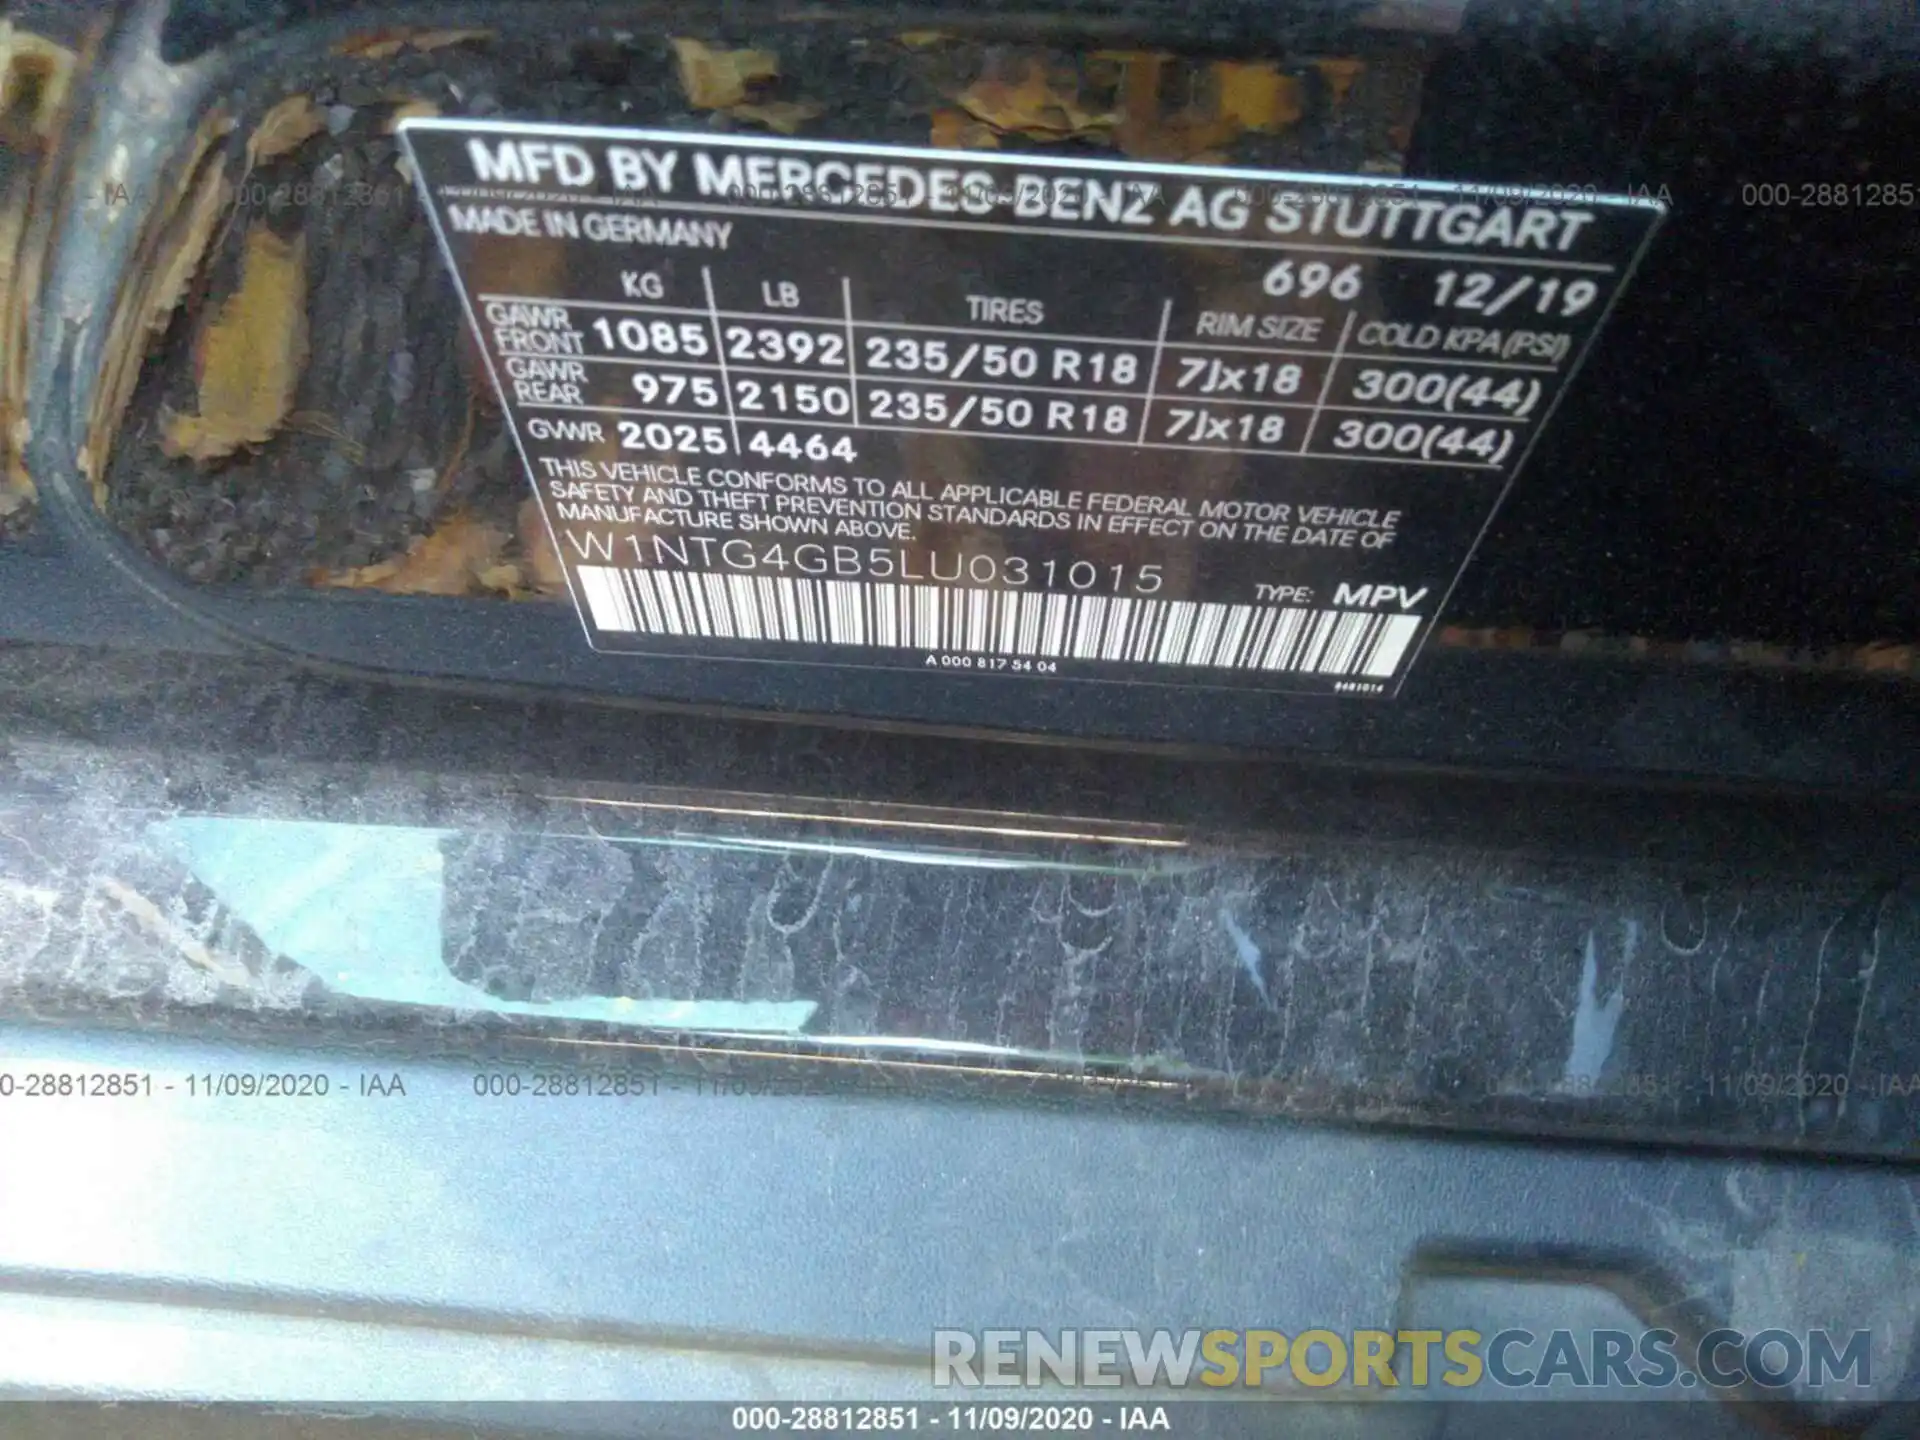 9 Photograph of a damaged car W1NTG4GB5LU031015 MERCEDES-BENZ GLA 2020